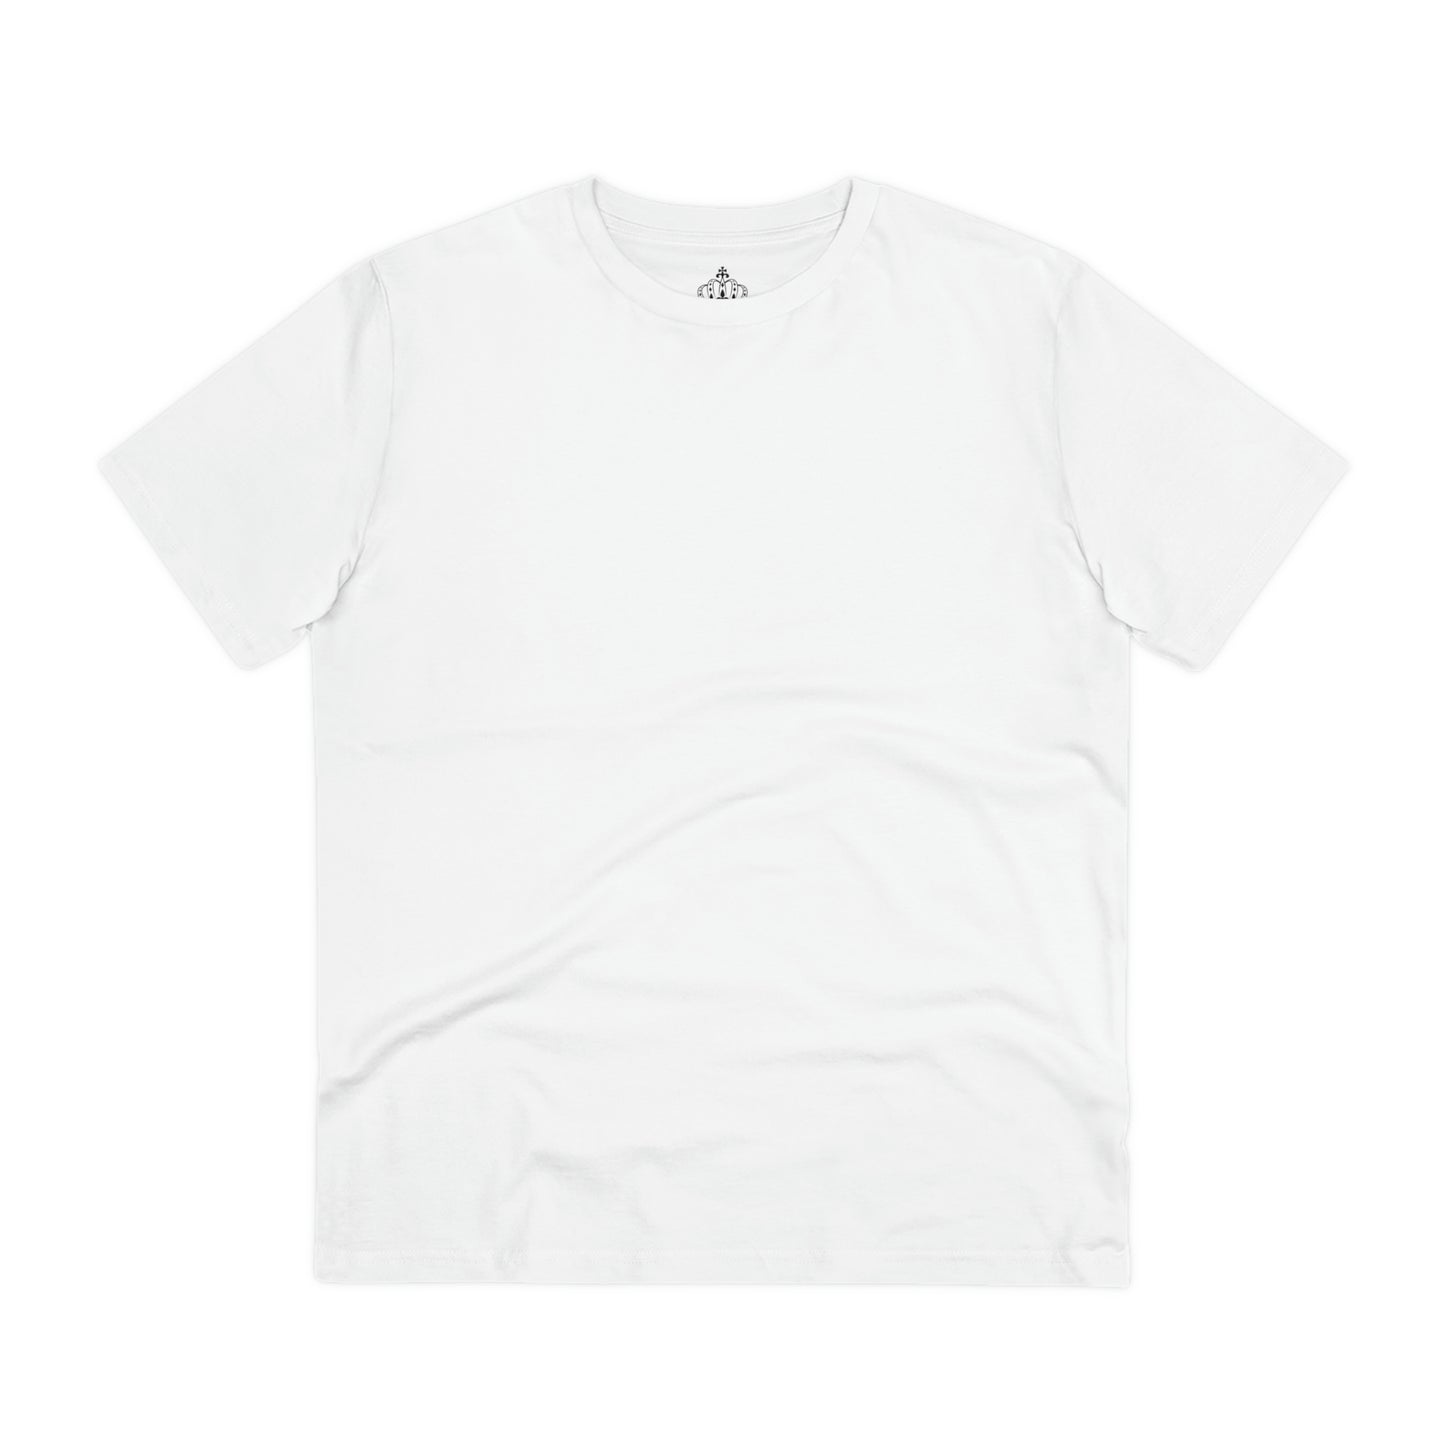 White - Organic Creator T-shirt - Unisex